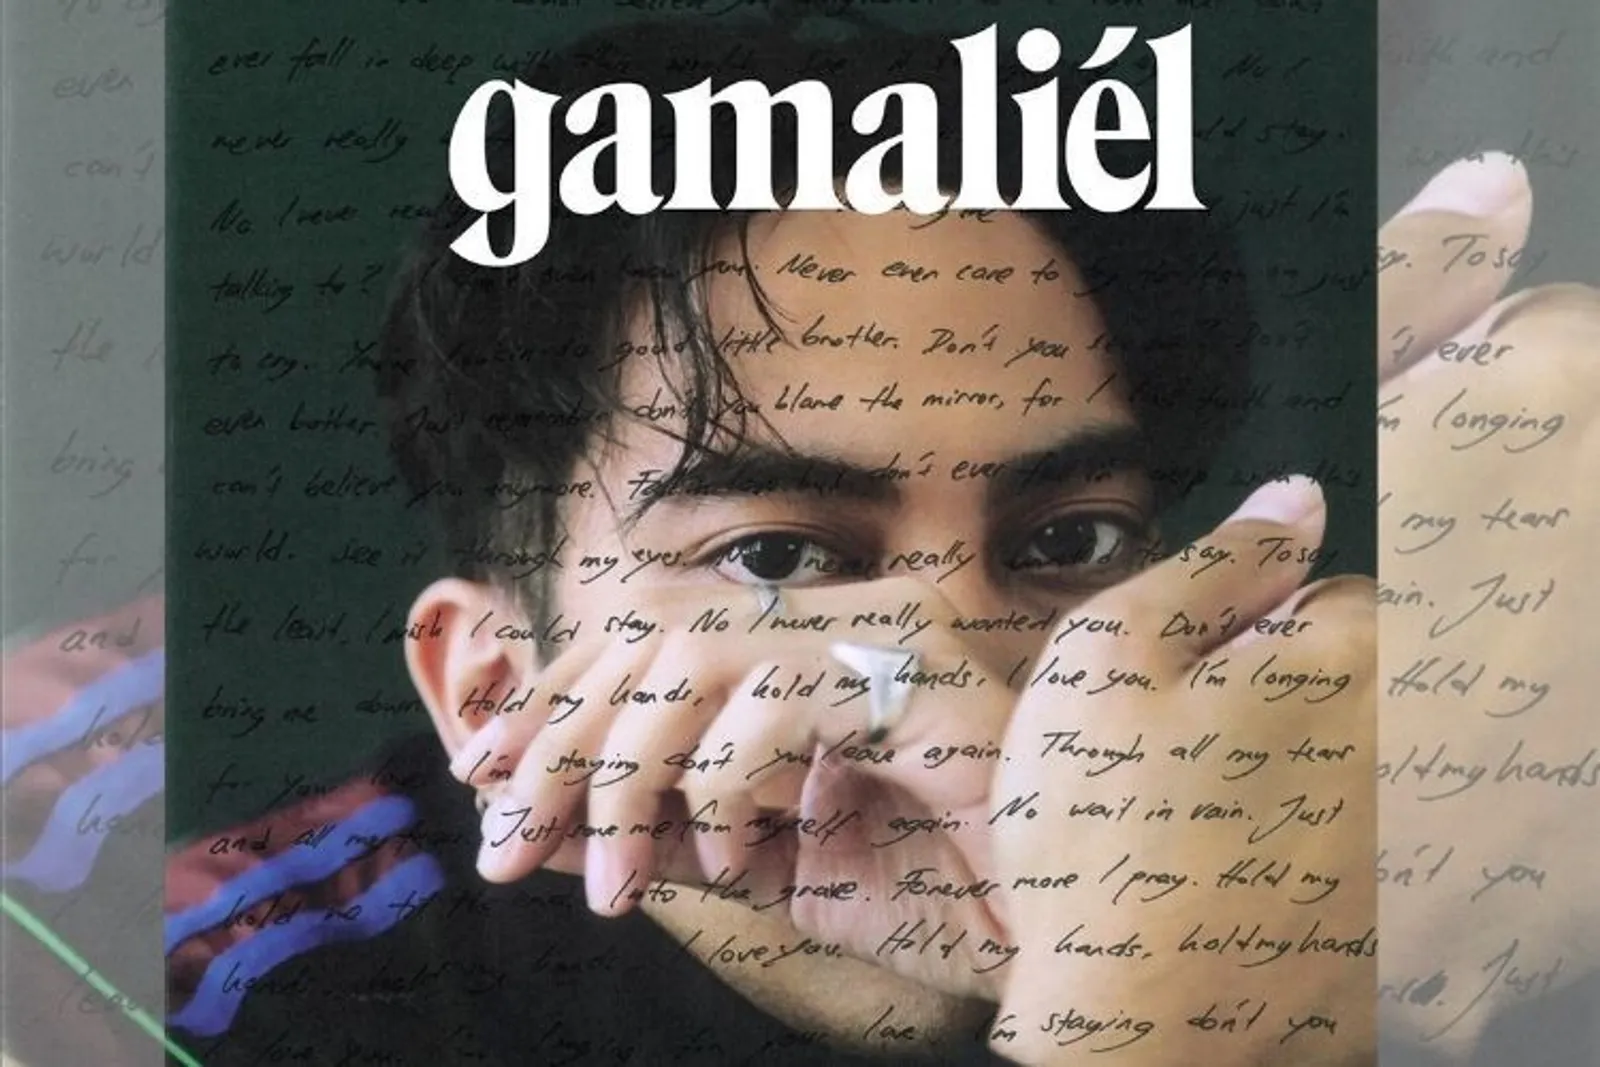 Gamaliel Rilis Single Solo /forever more/, Ini Lirik dan Faktanya!